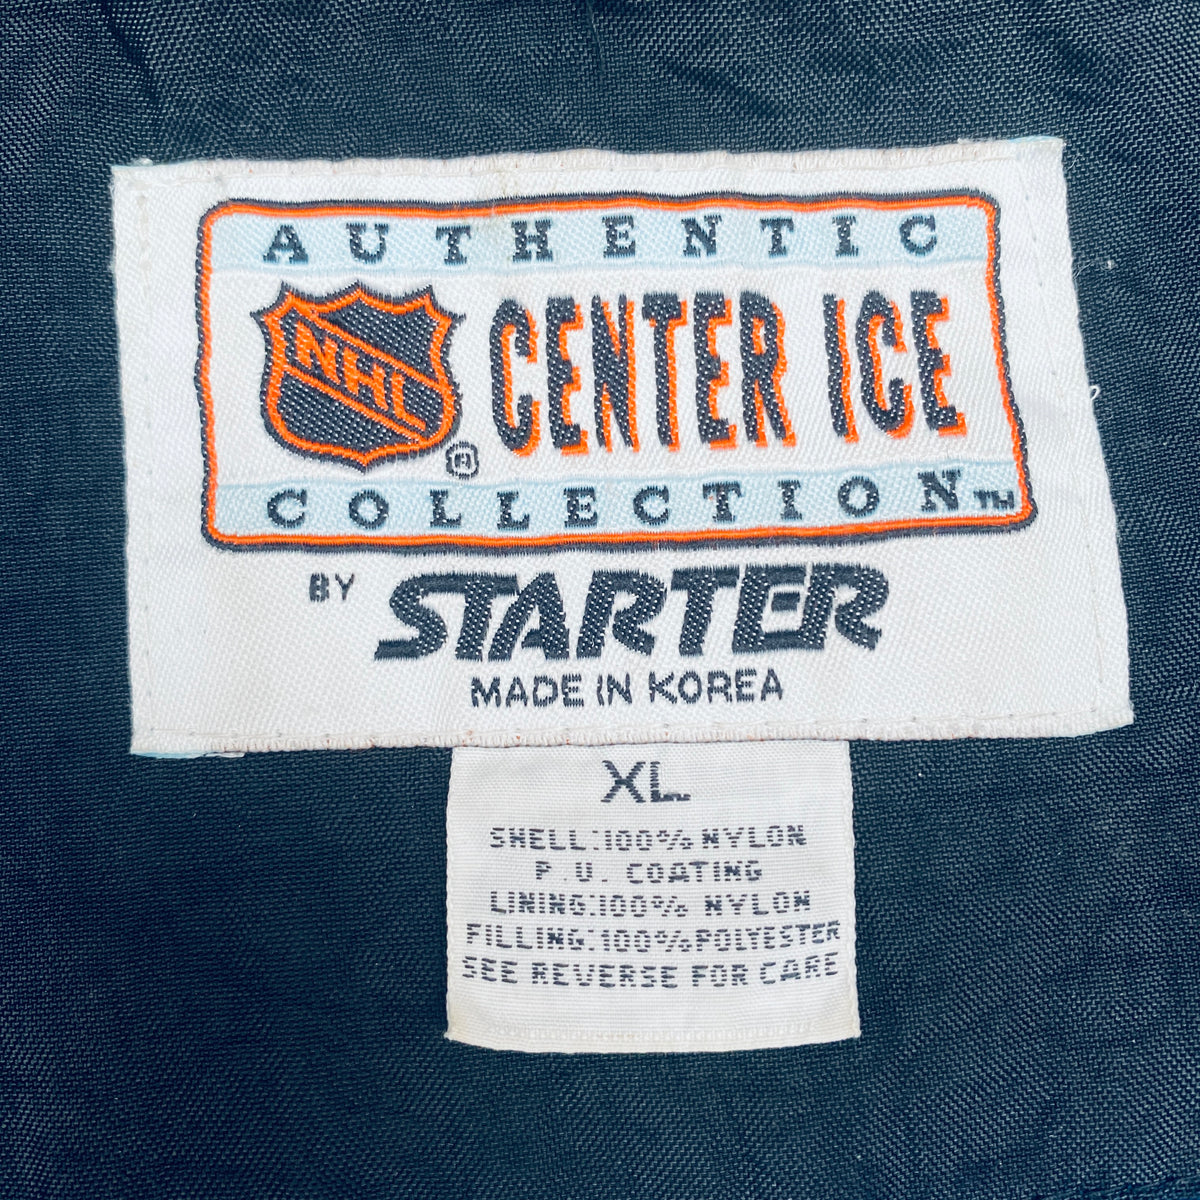 New York Knicks: 1990's Blackout 1/4 Zip Starter Breakaway Jacket